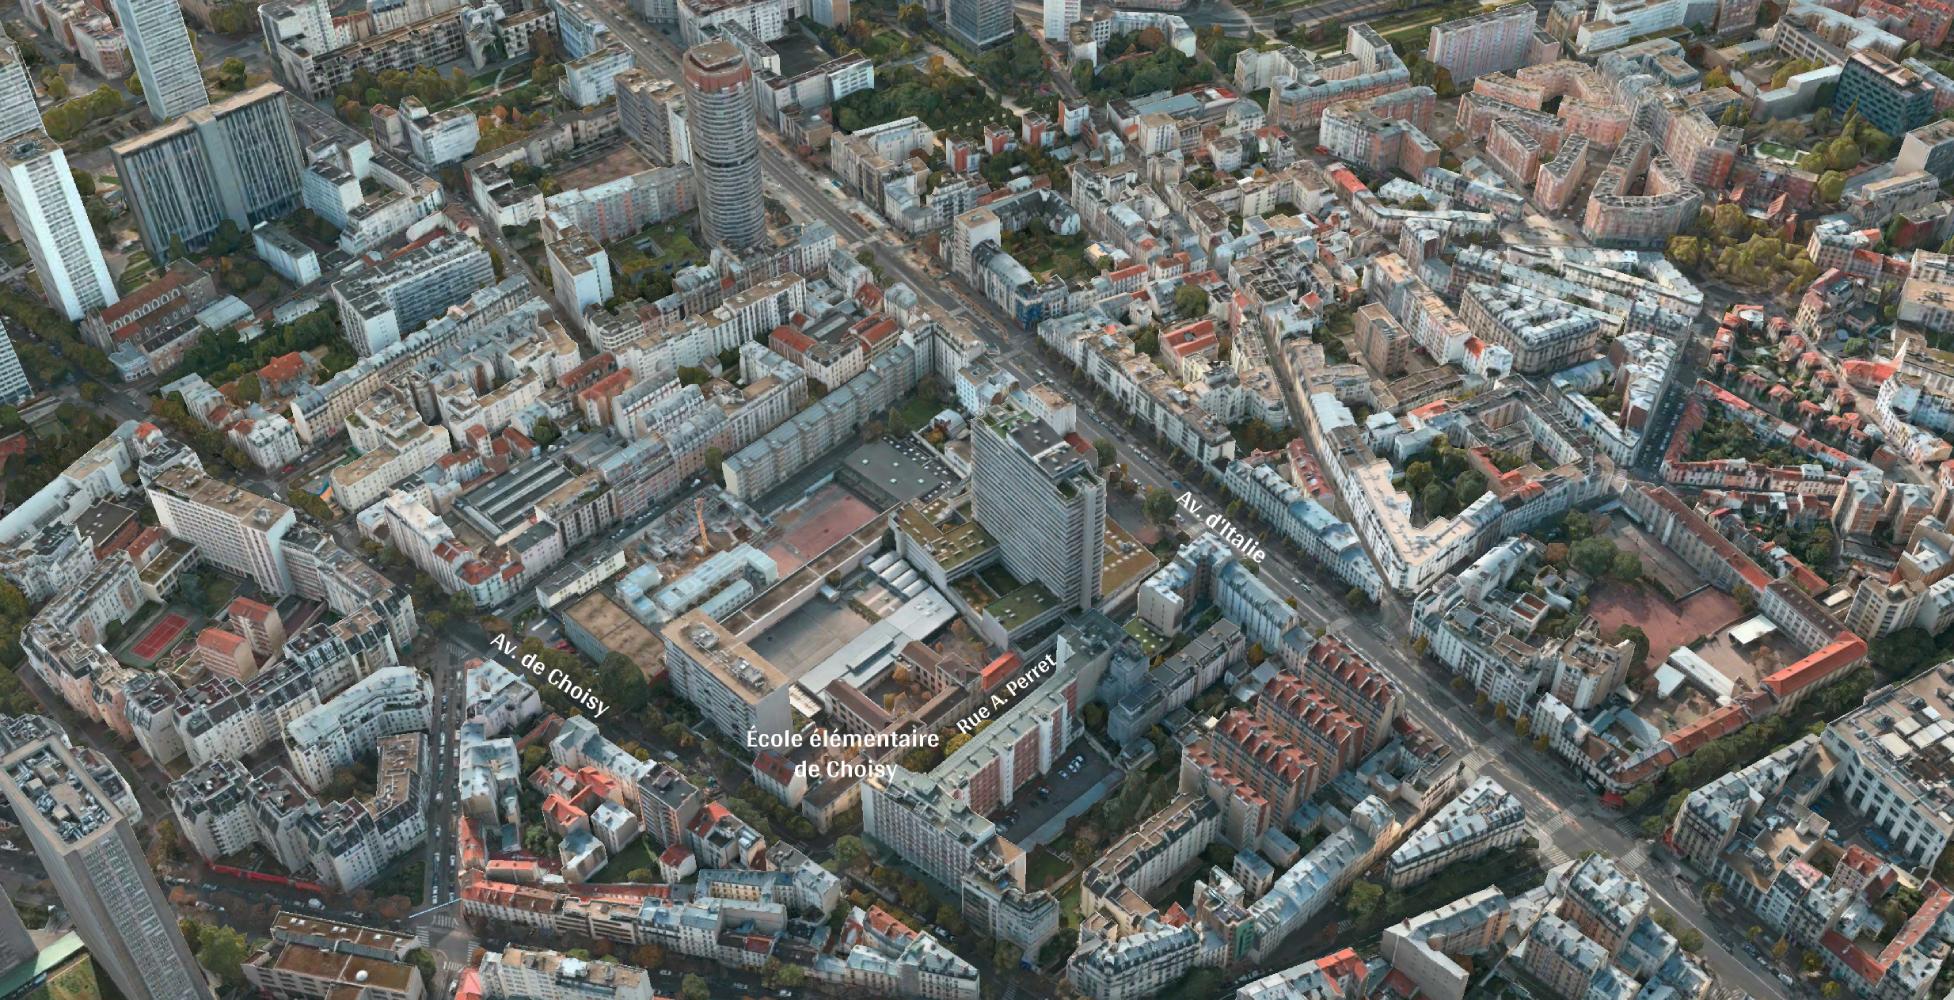 Vue aérienne du quartier des travaux de prolongement au sud de la ligne 14 dans le 13e arrondissement, pointant l'emplacement de l'école élémentaire de Choisy